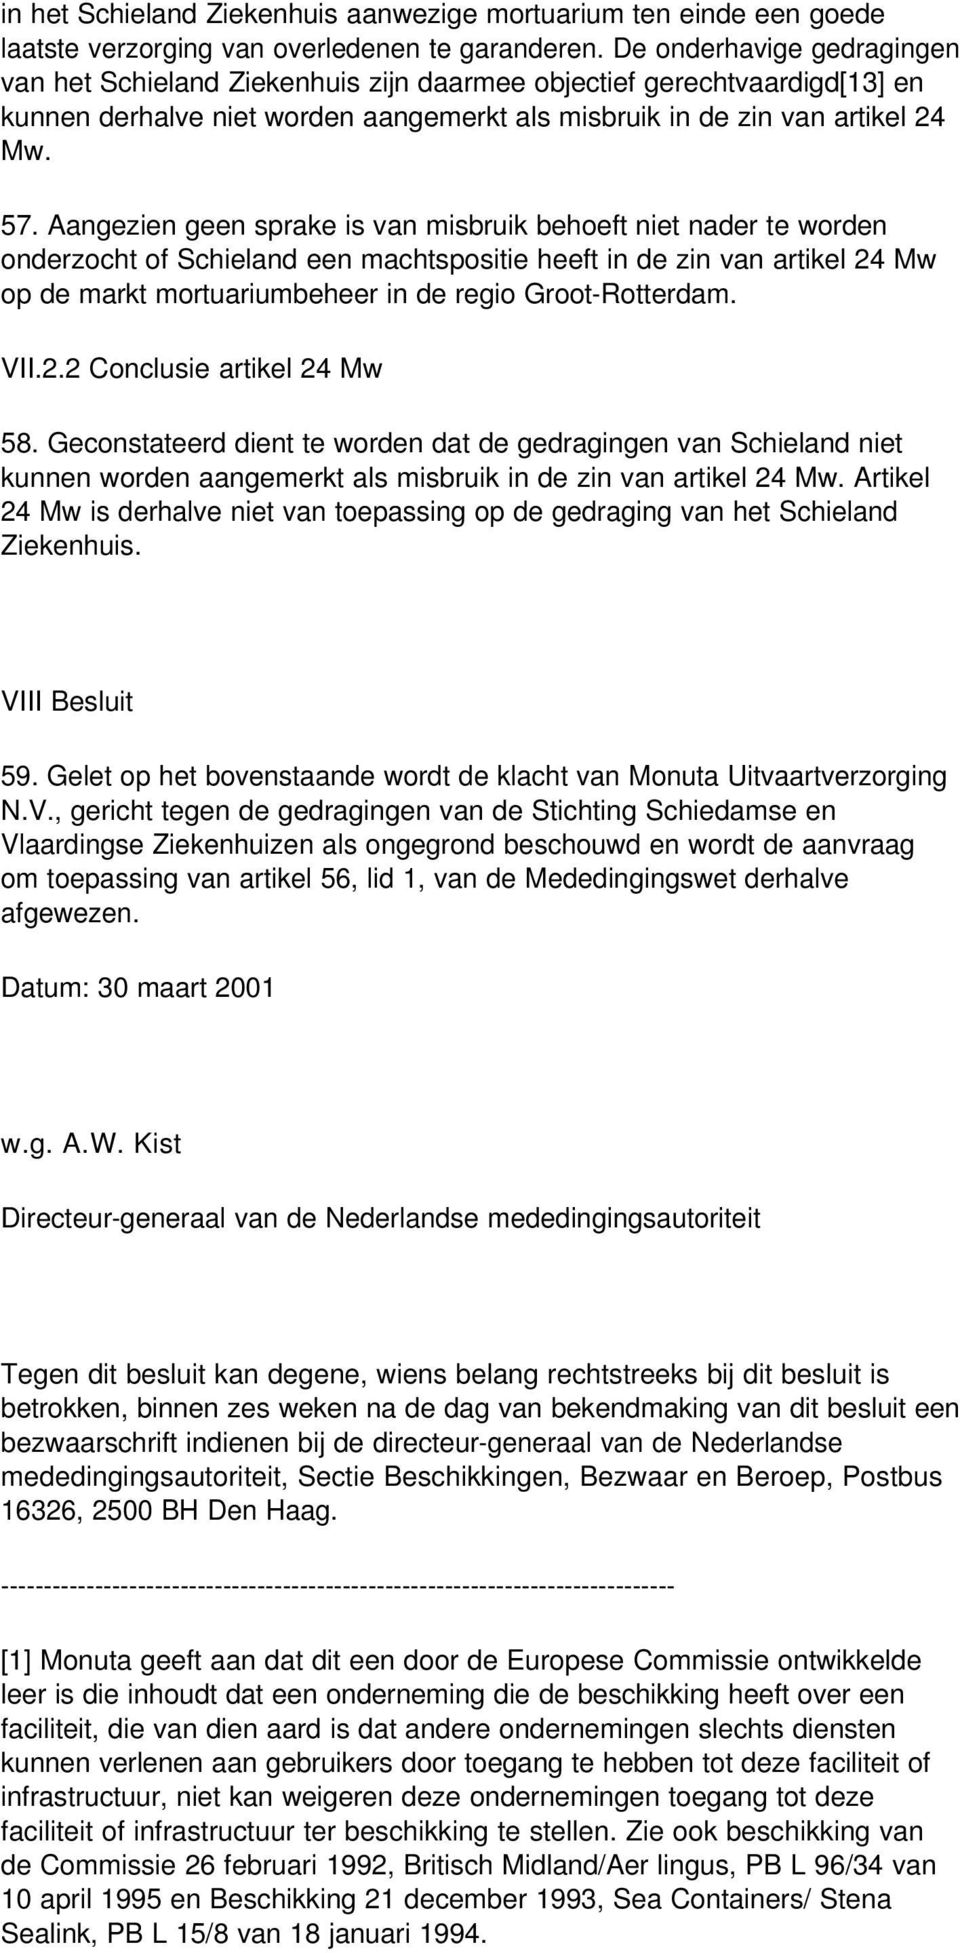 Aangezien geen sprake is van misbruik behoeft niet nader te worden onderzocht of Schieland een machtspositie heeft in de zin van artikel 24 Mw op de markt mortuariumbeheer in de regio Groot-Rotterdam.